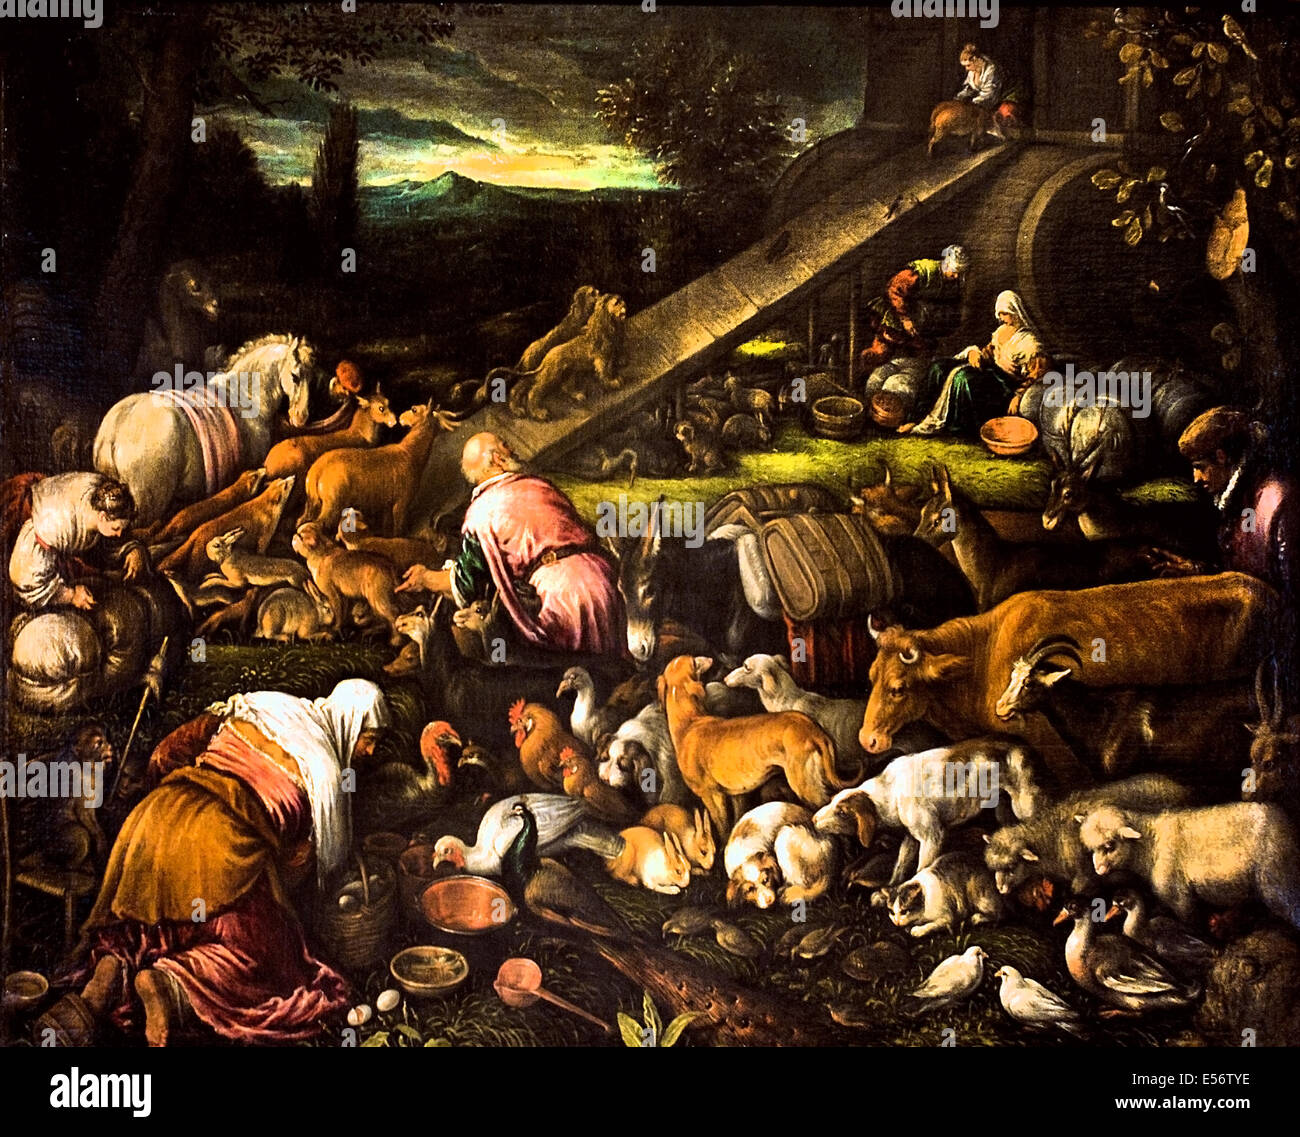 Los animales en el arca, Francesco Bassano 1549 1592 Italia italiano el arca de Noé es el buque en el diluvio del Génesis narrativa Foto de stock